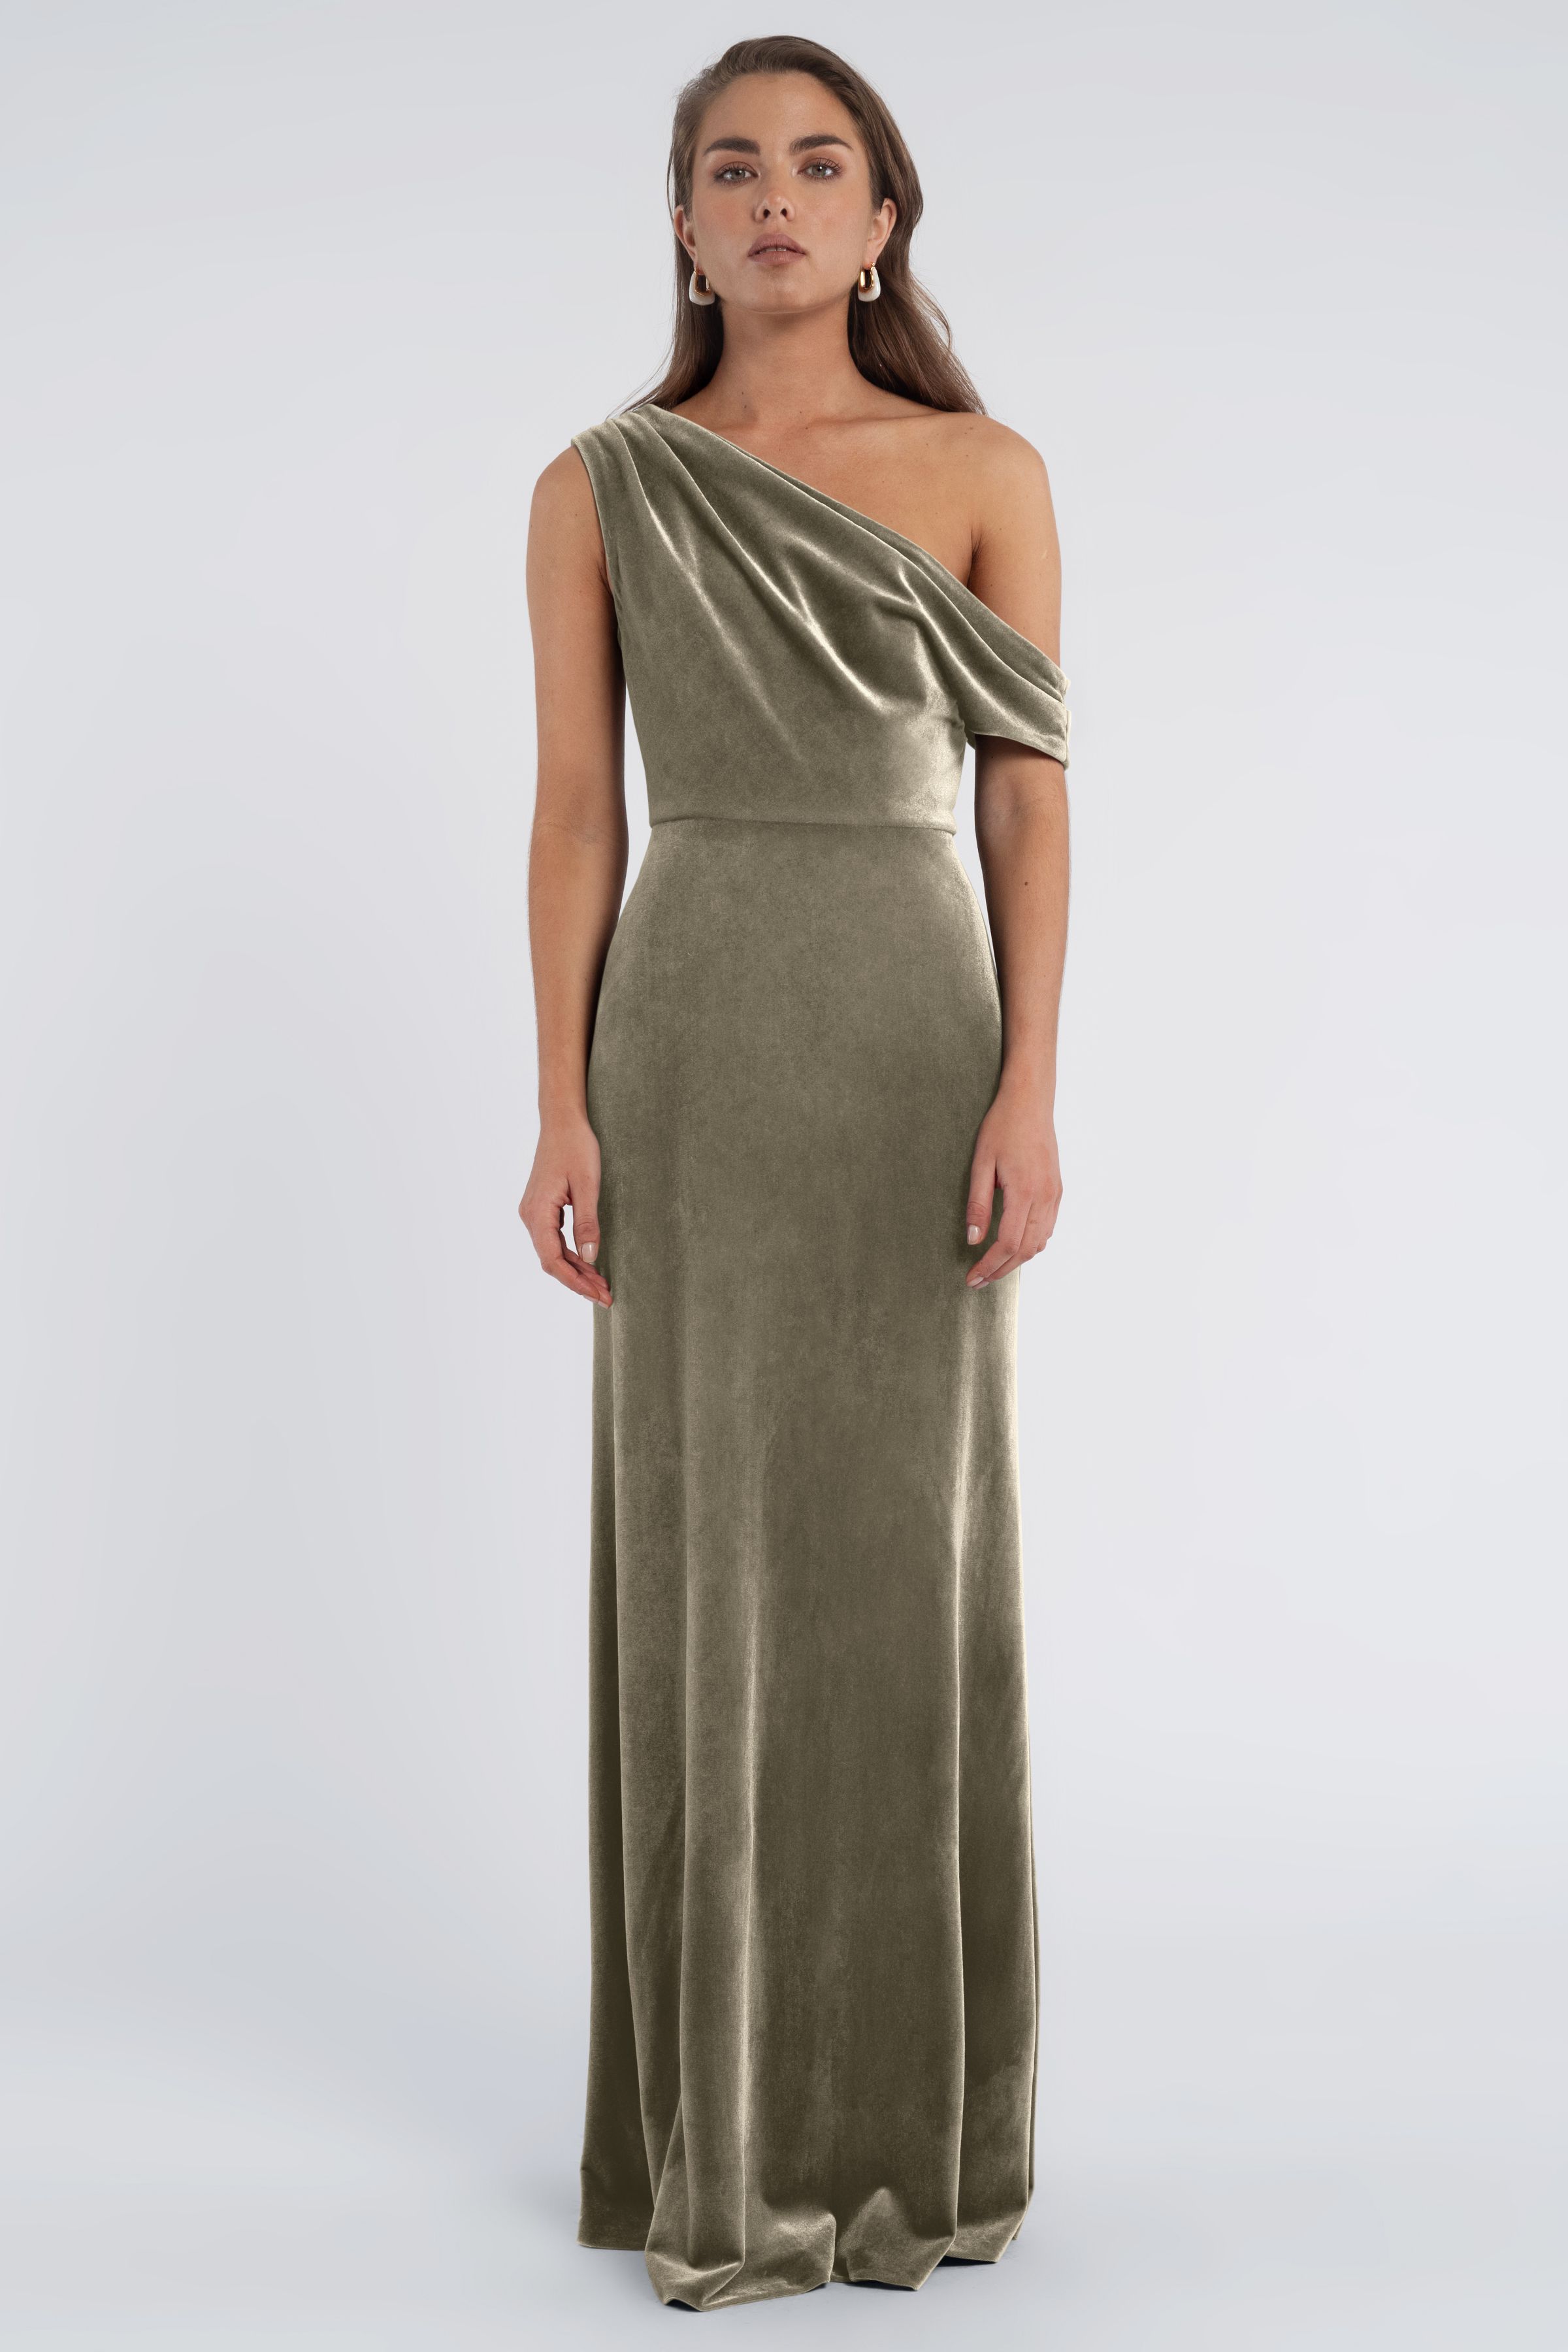 Rory Velvet Dress | Made To Order